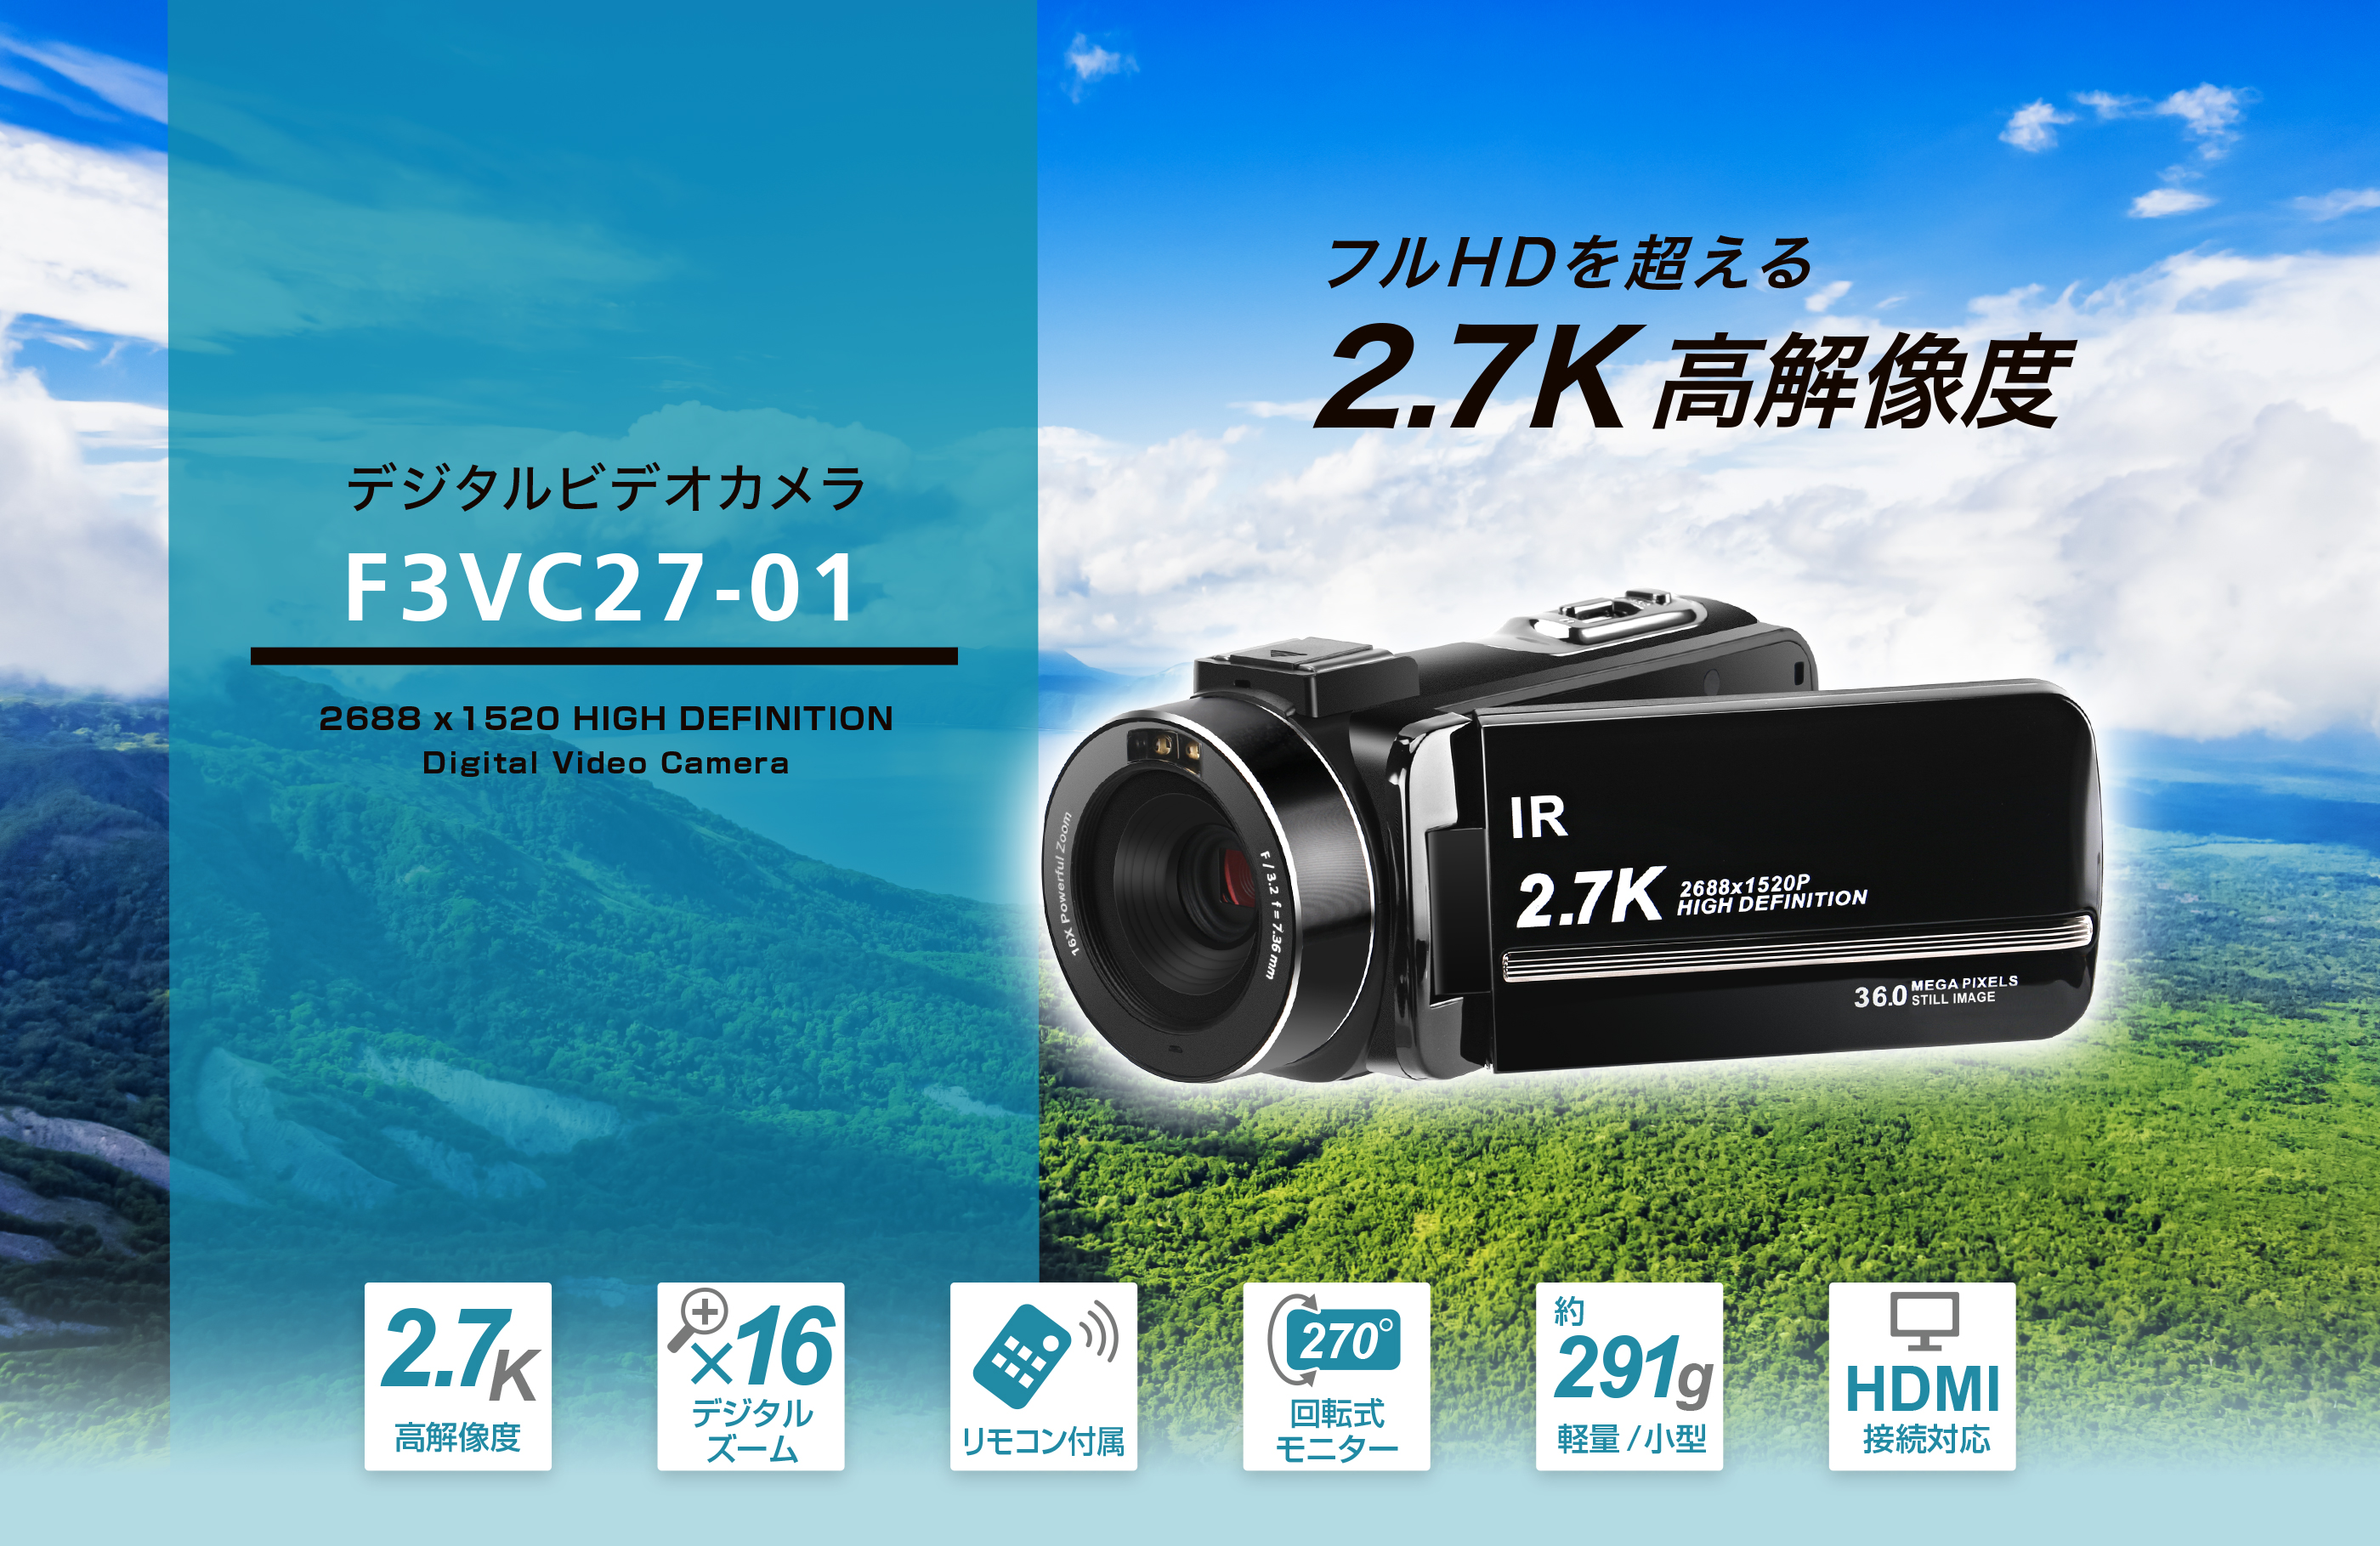 フルHDを超える2.7K高解像度 デジタルビデオカメラ F3VC27-01